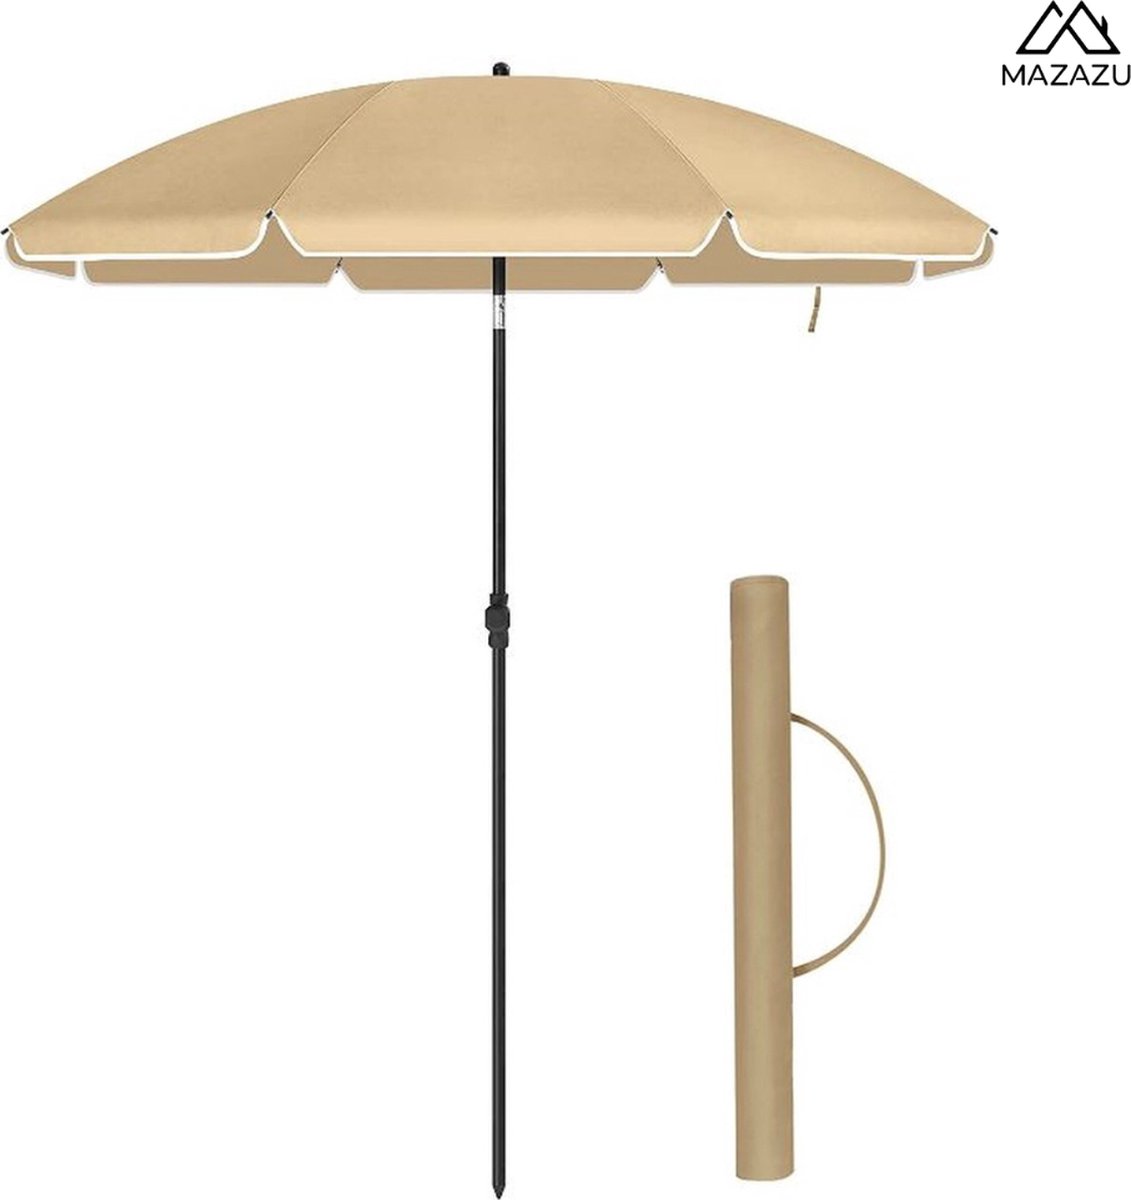 MIRA Home - Parasols - Luxe Parasol - Beige - Parasol Strand - (Parasolvoet niet inbegrepen) - Ø180x210cm